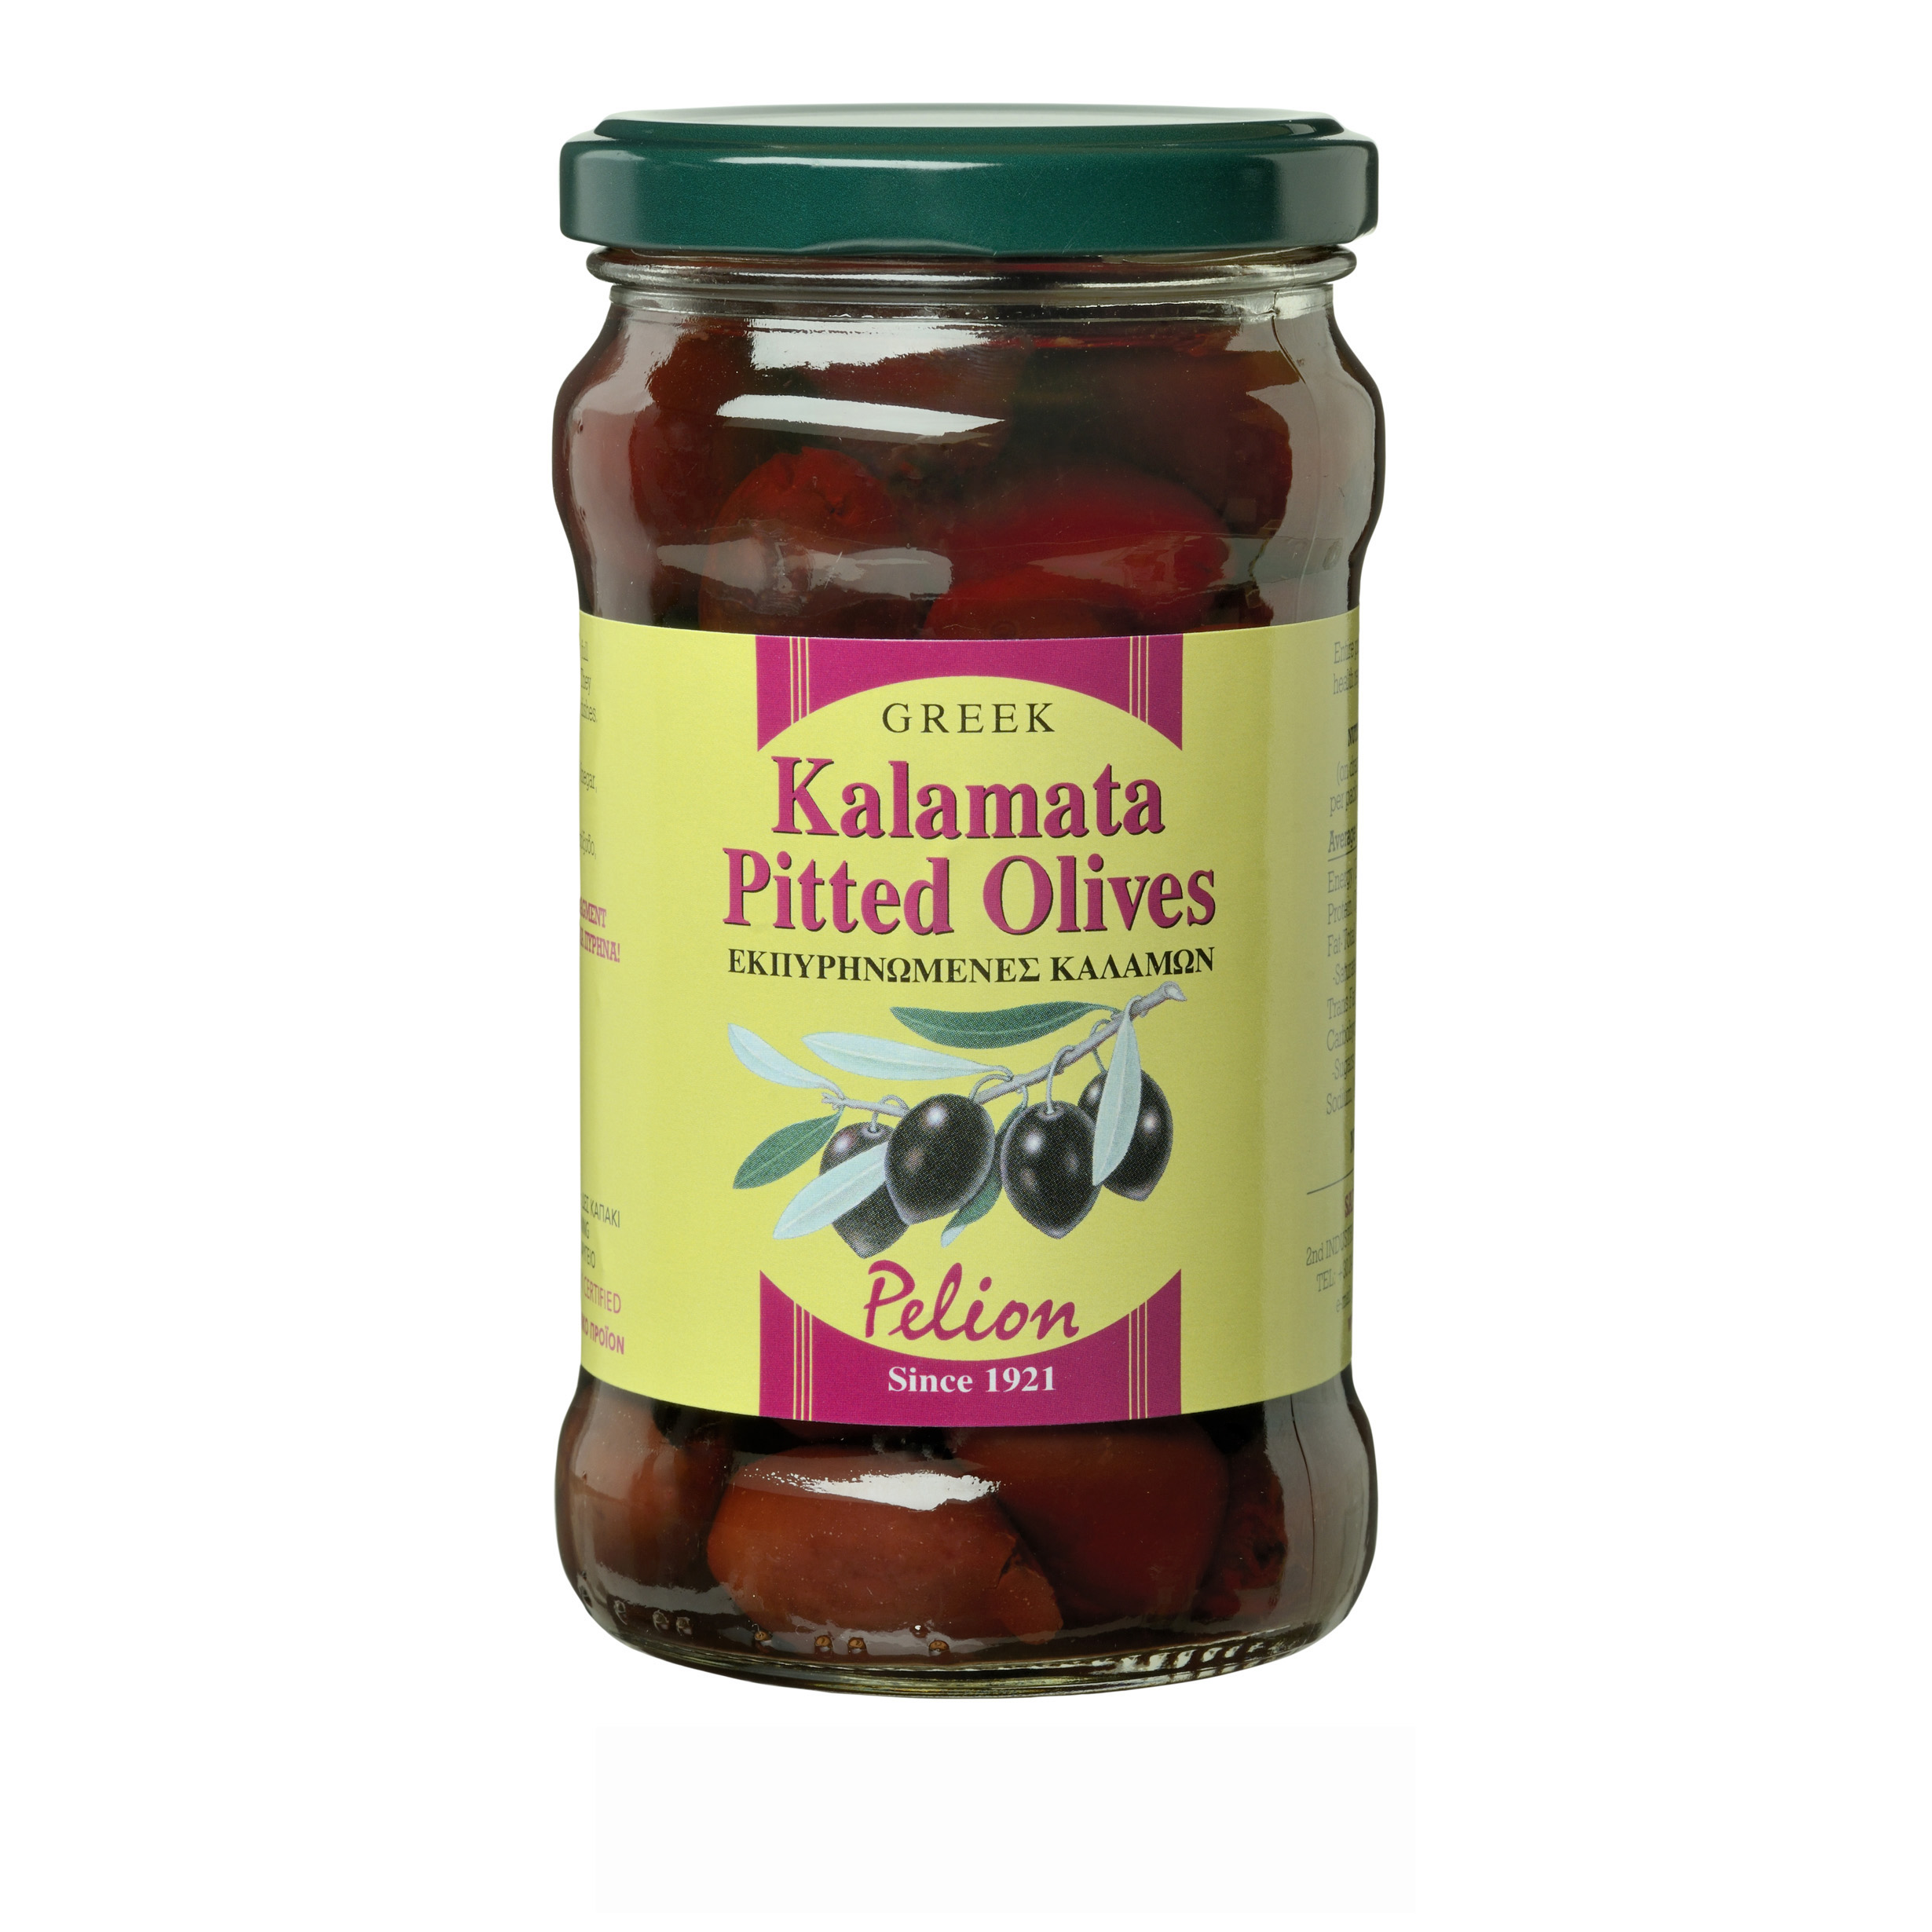 02_Kalamata Pitted Olives 175g_EN_LR